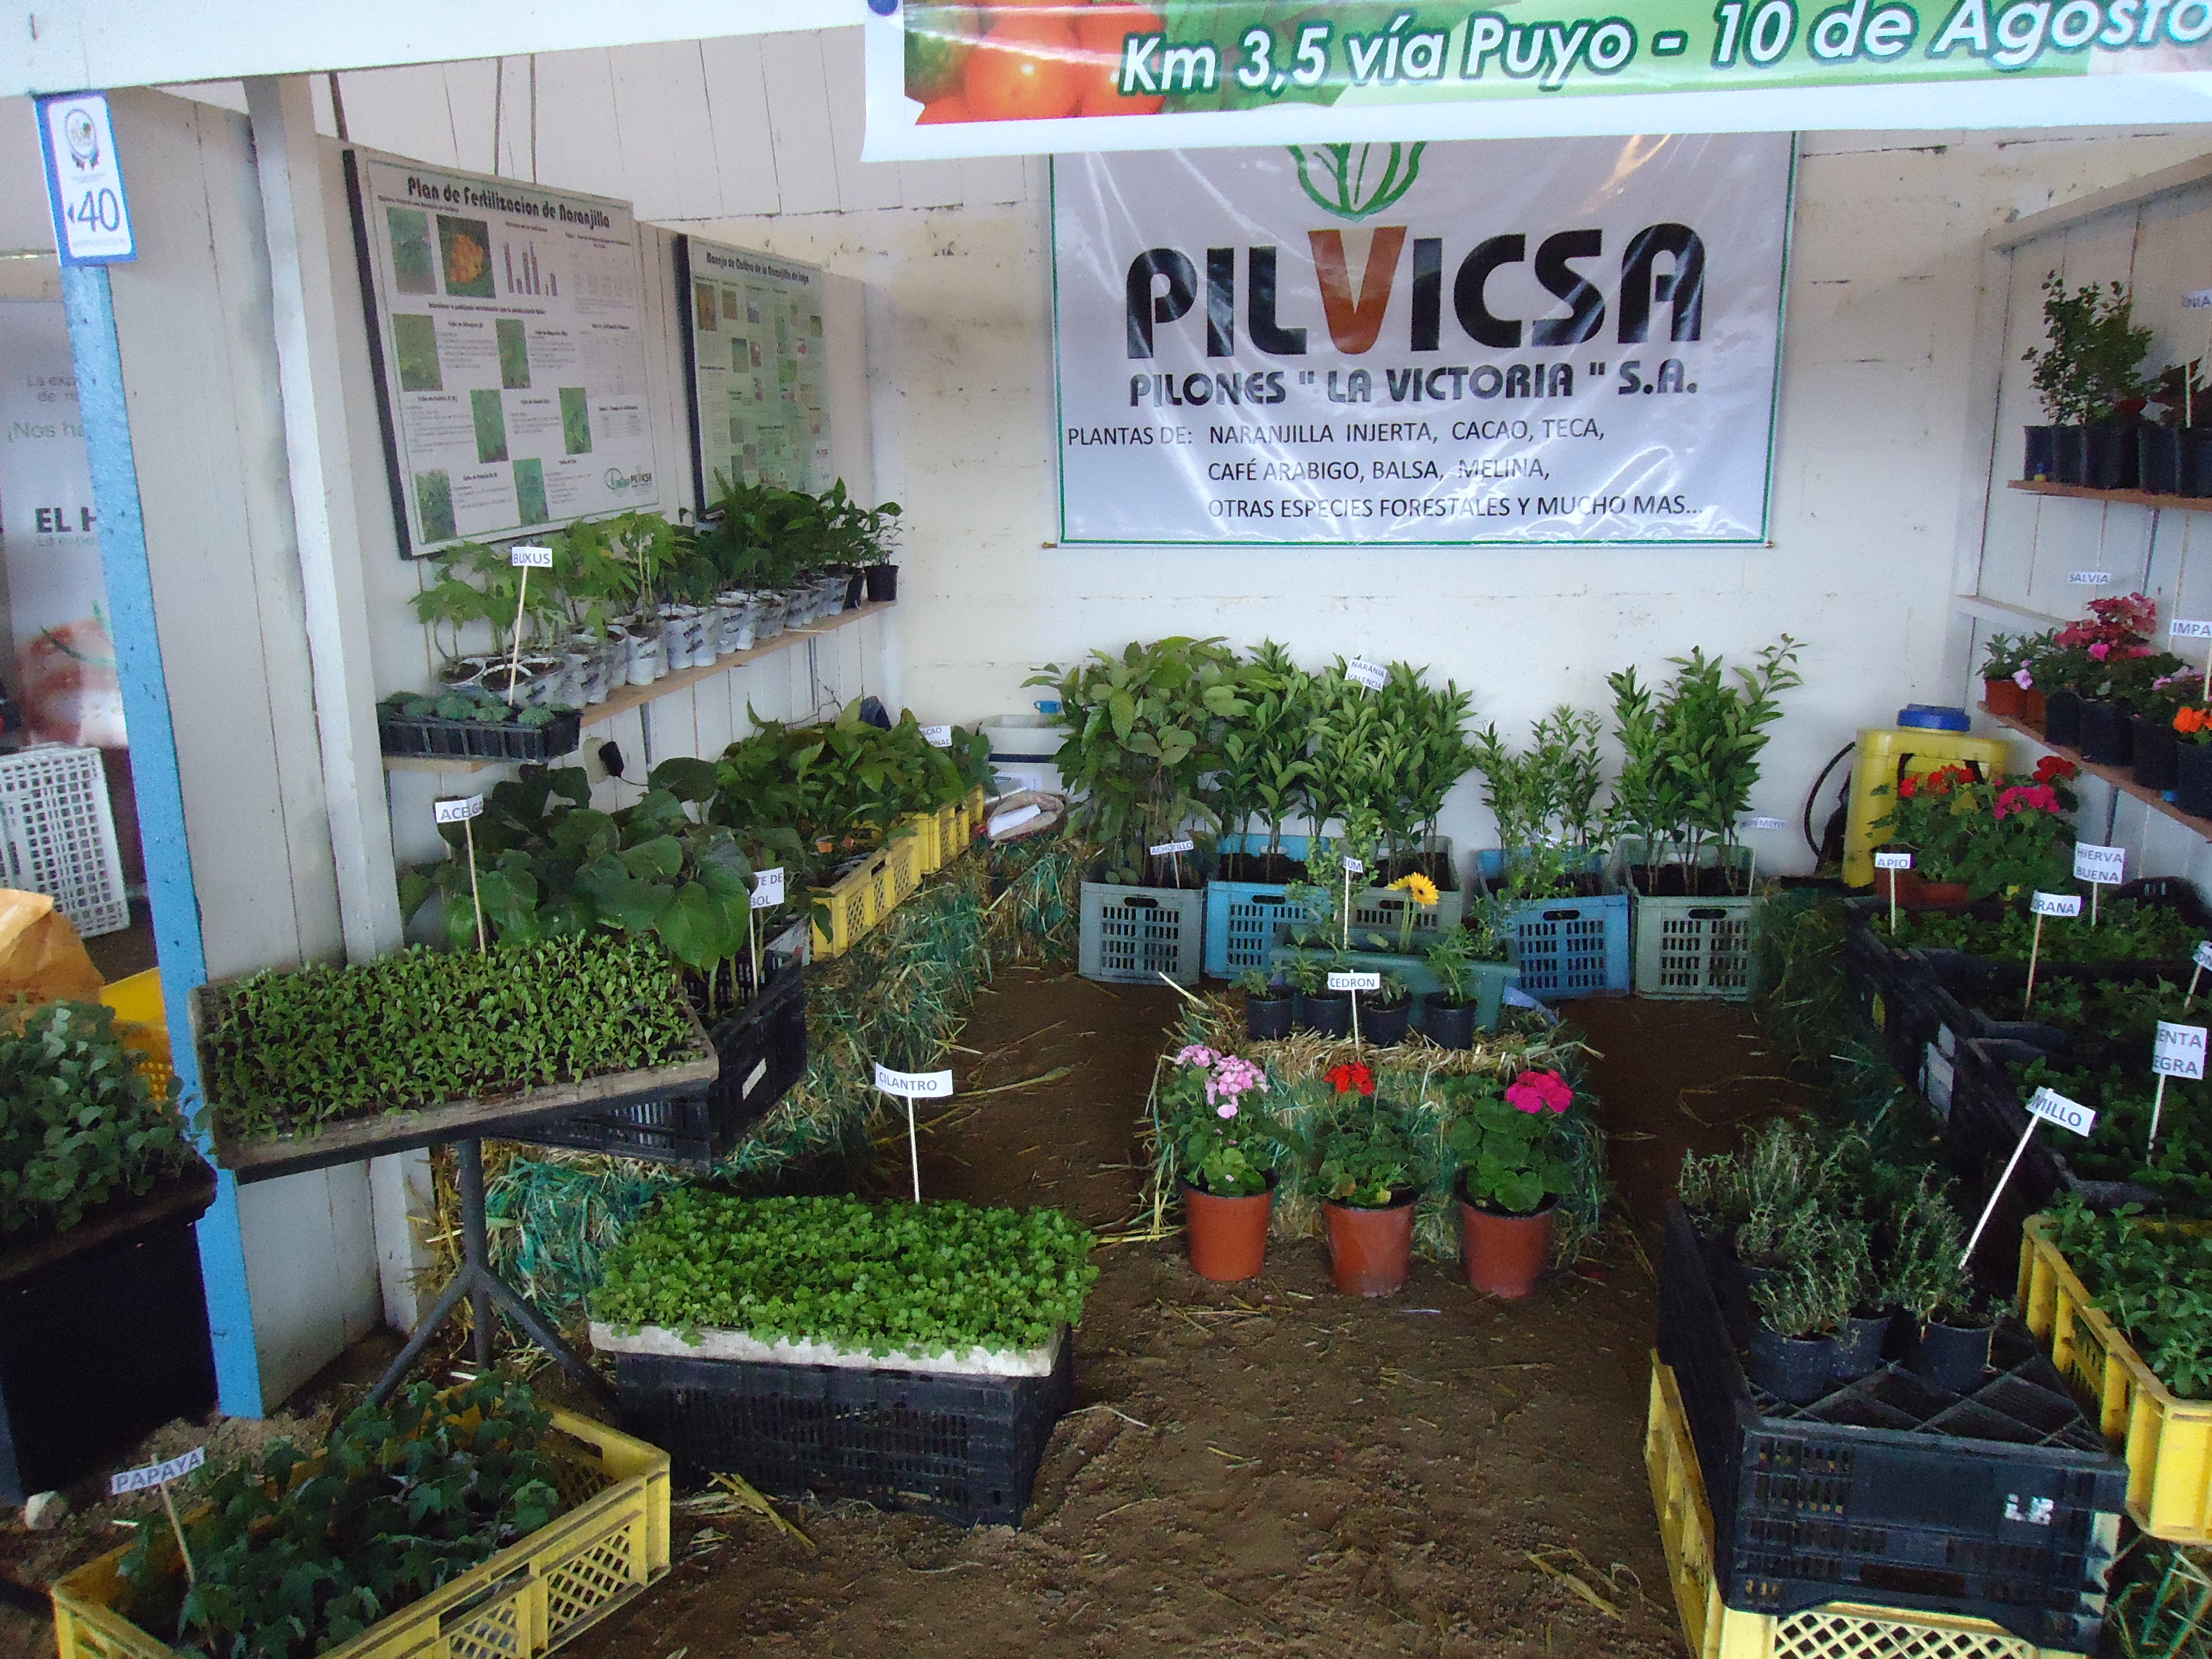 Foto: Pilvicsa - Puyo (Pastaza), Ecuador